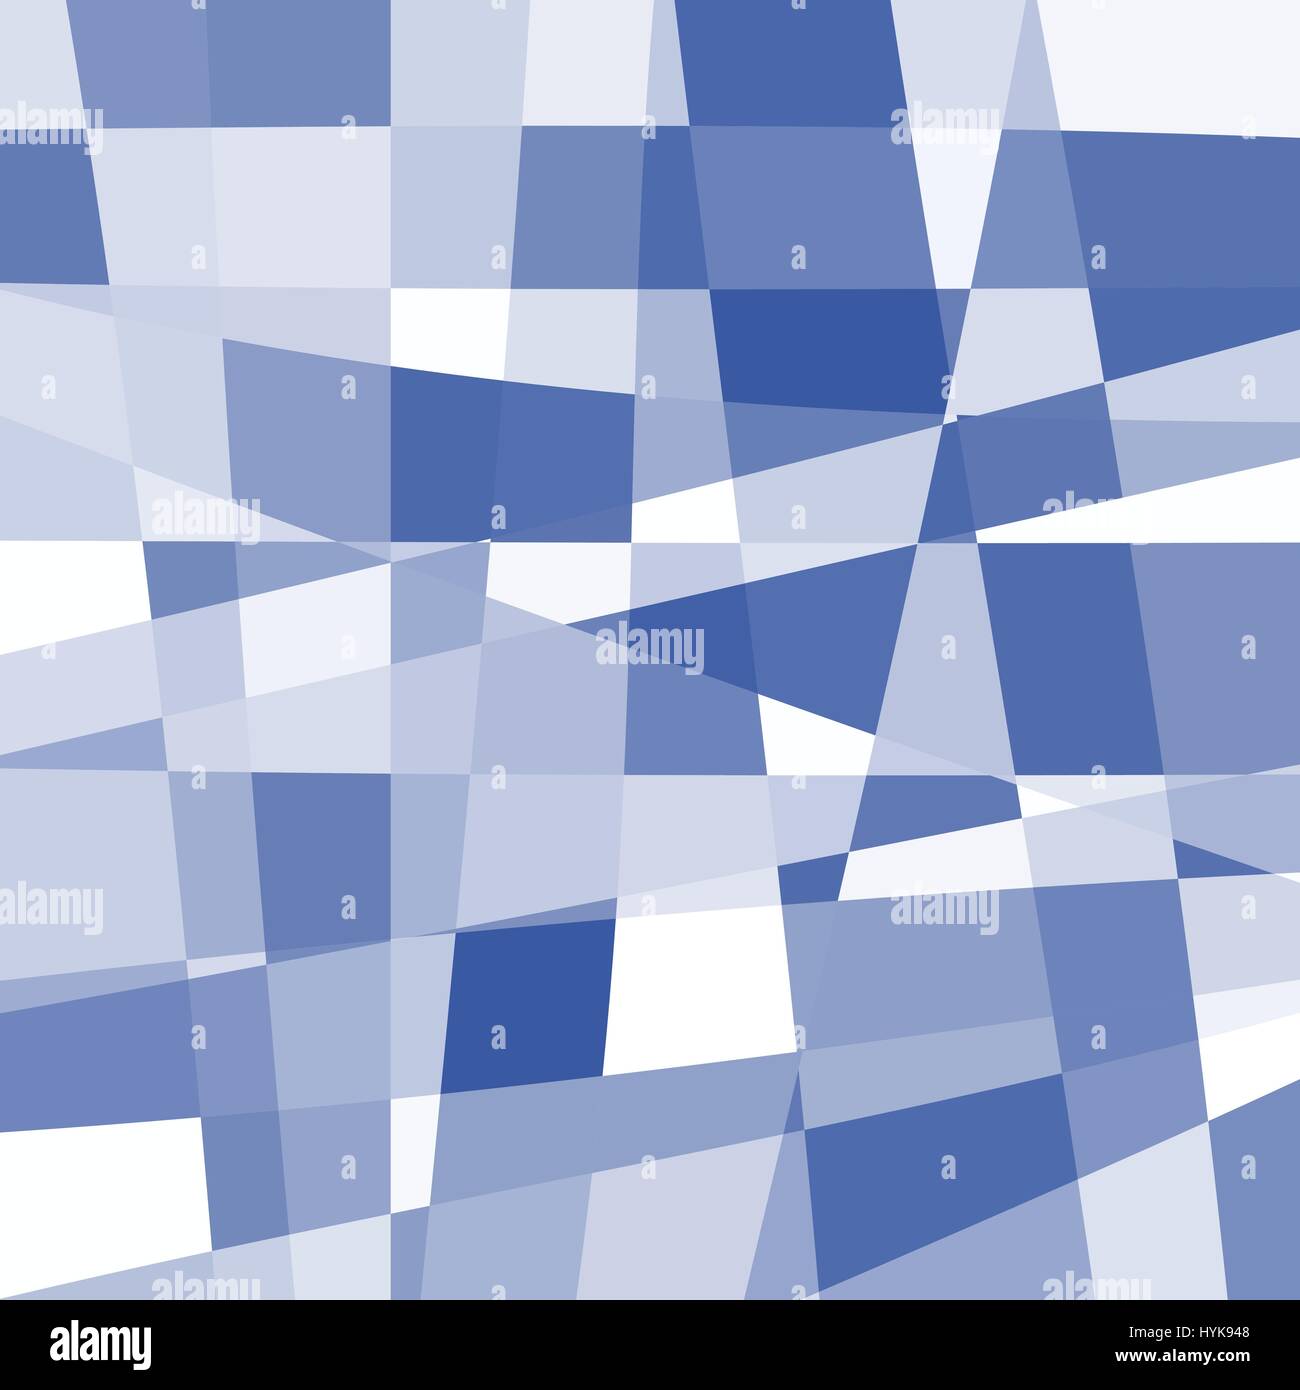 Isolierte abstrakt blau und weiß Farbe ungewöhnliche karierten Hintergrund, Rechtecke andere unebene Form Kulisse, ungewöhnliche Textur-Muster-Vektor-illustration Stock Vektor